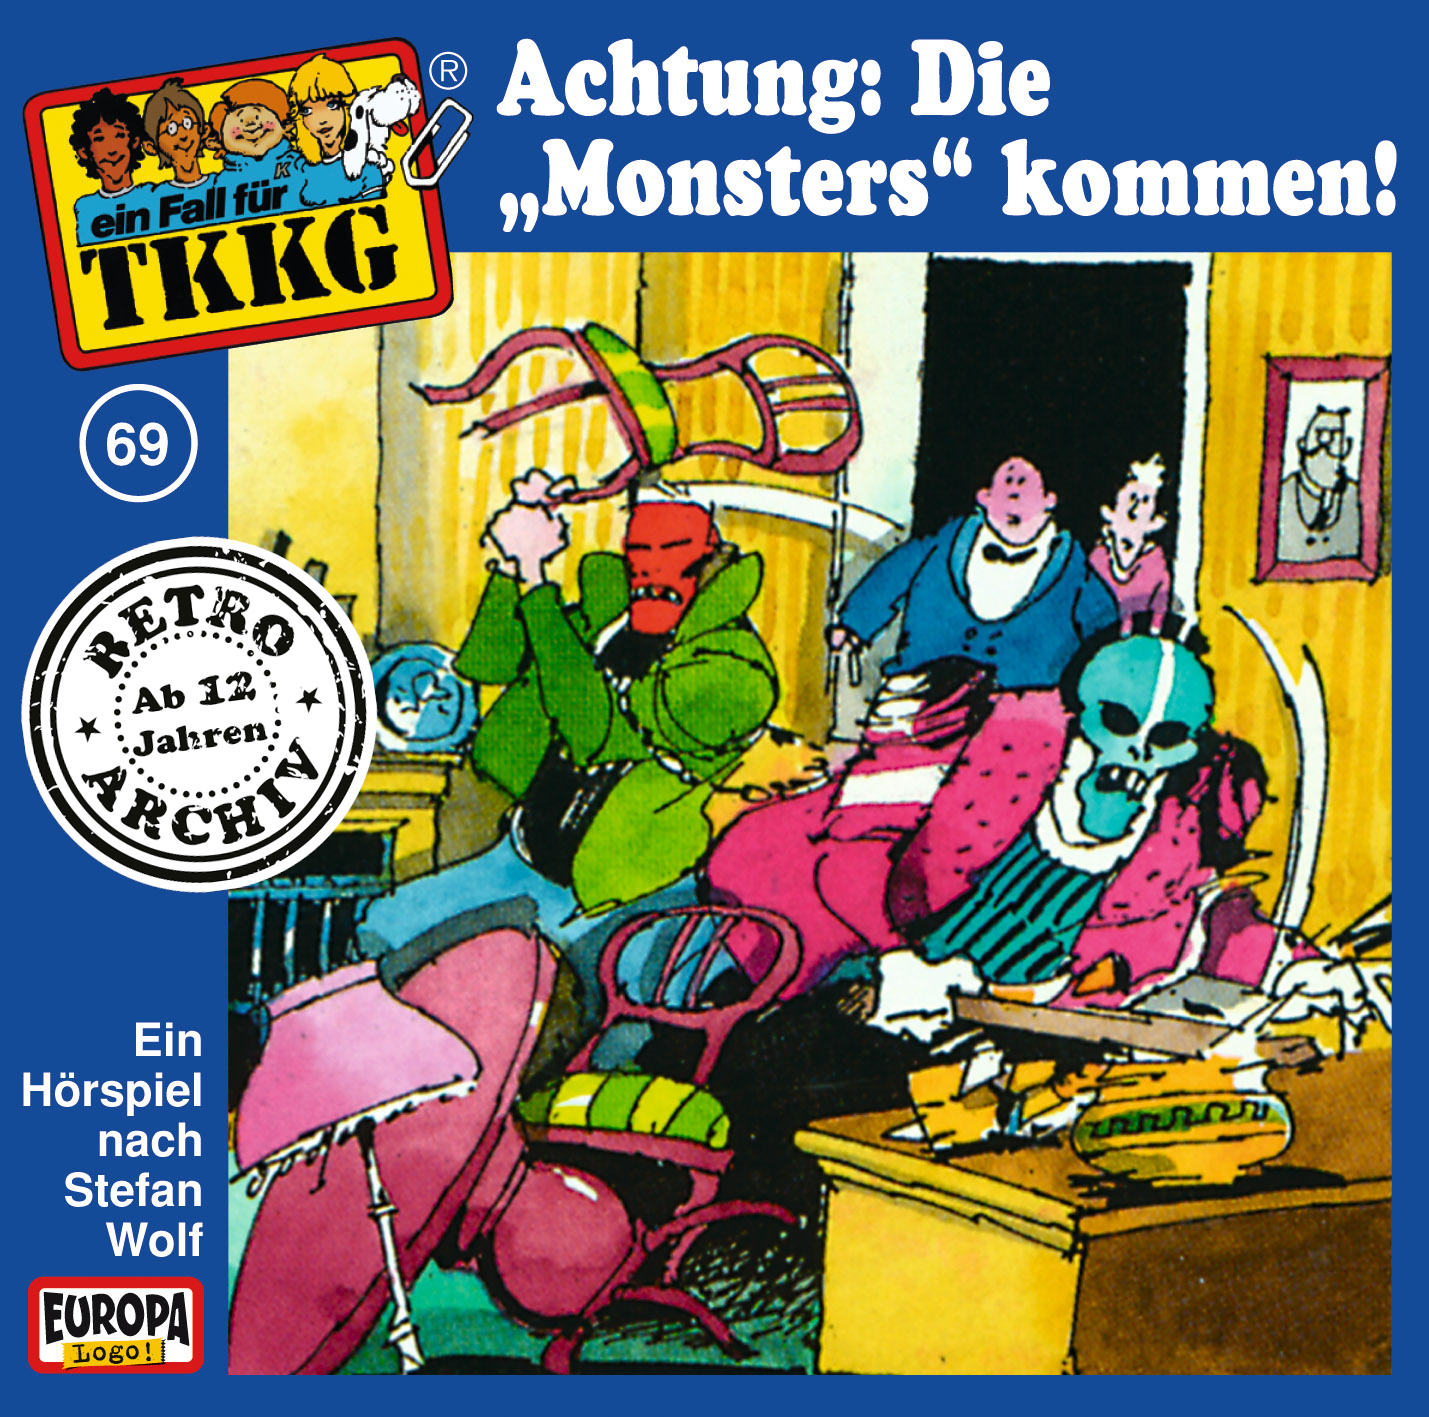 TKKG Retro-Archiv - Achtung: Die "Monsters" kommen!